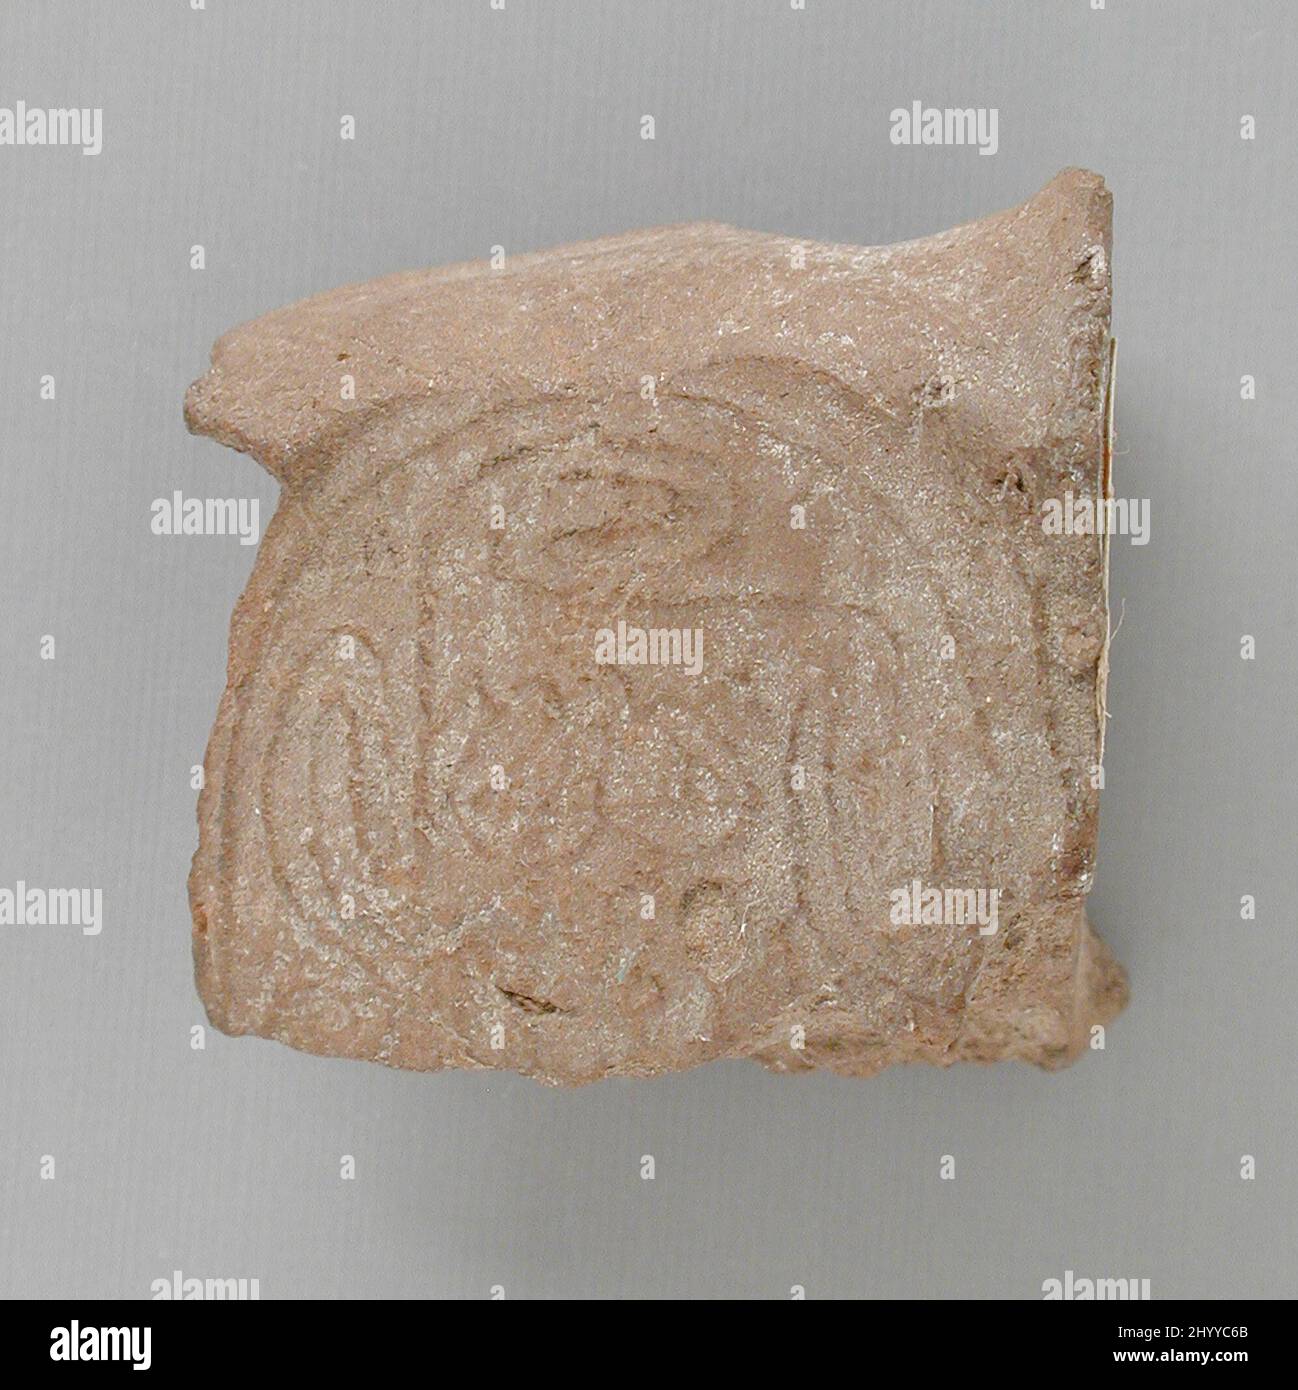 Sceller l'impression avec la conception en spirale. Égypte, Royaume du milieu (?) (2061 - 1665 BCE). Outils et équipement; joints. Argile semi-cuite au brûlage Banque D'Images